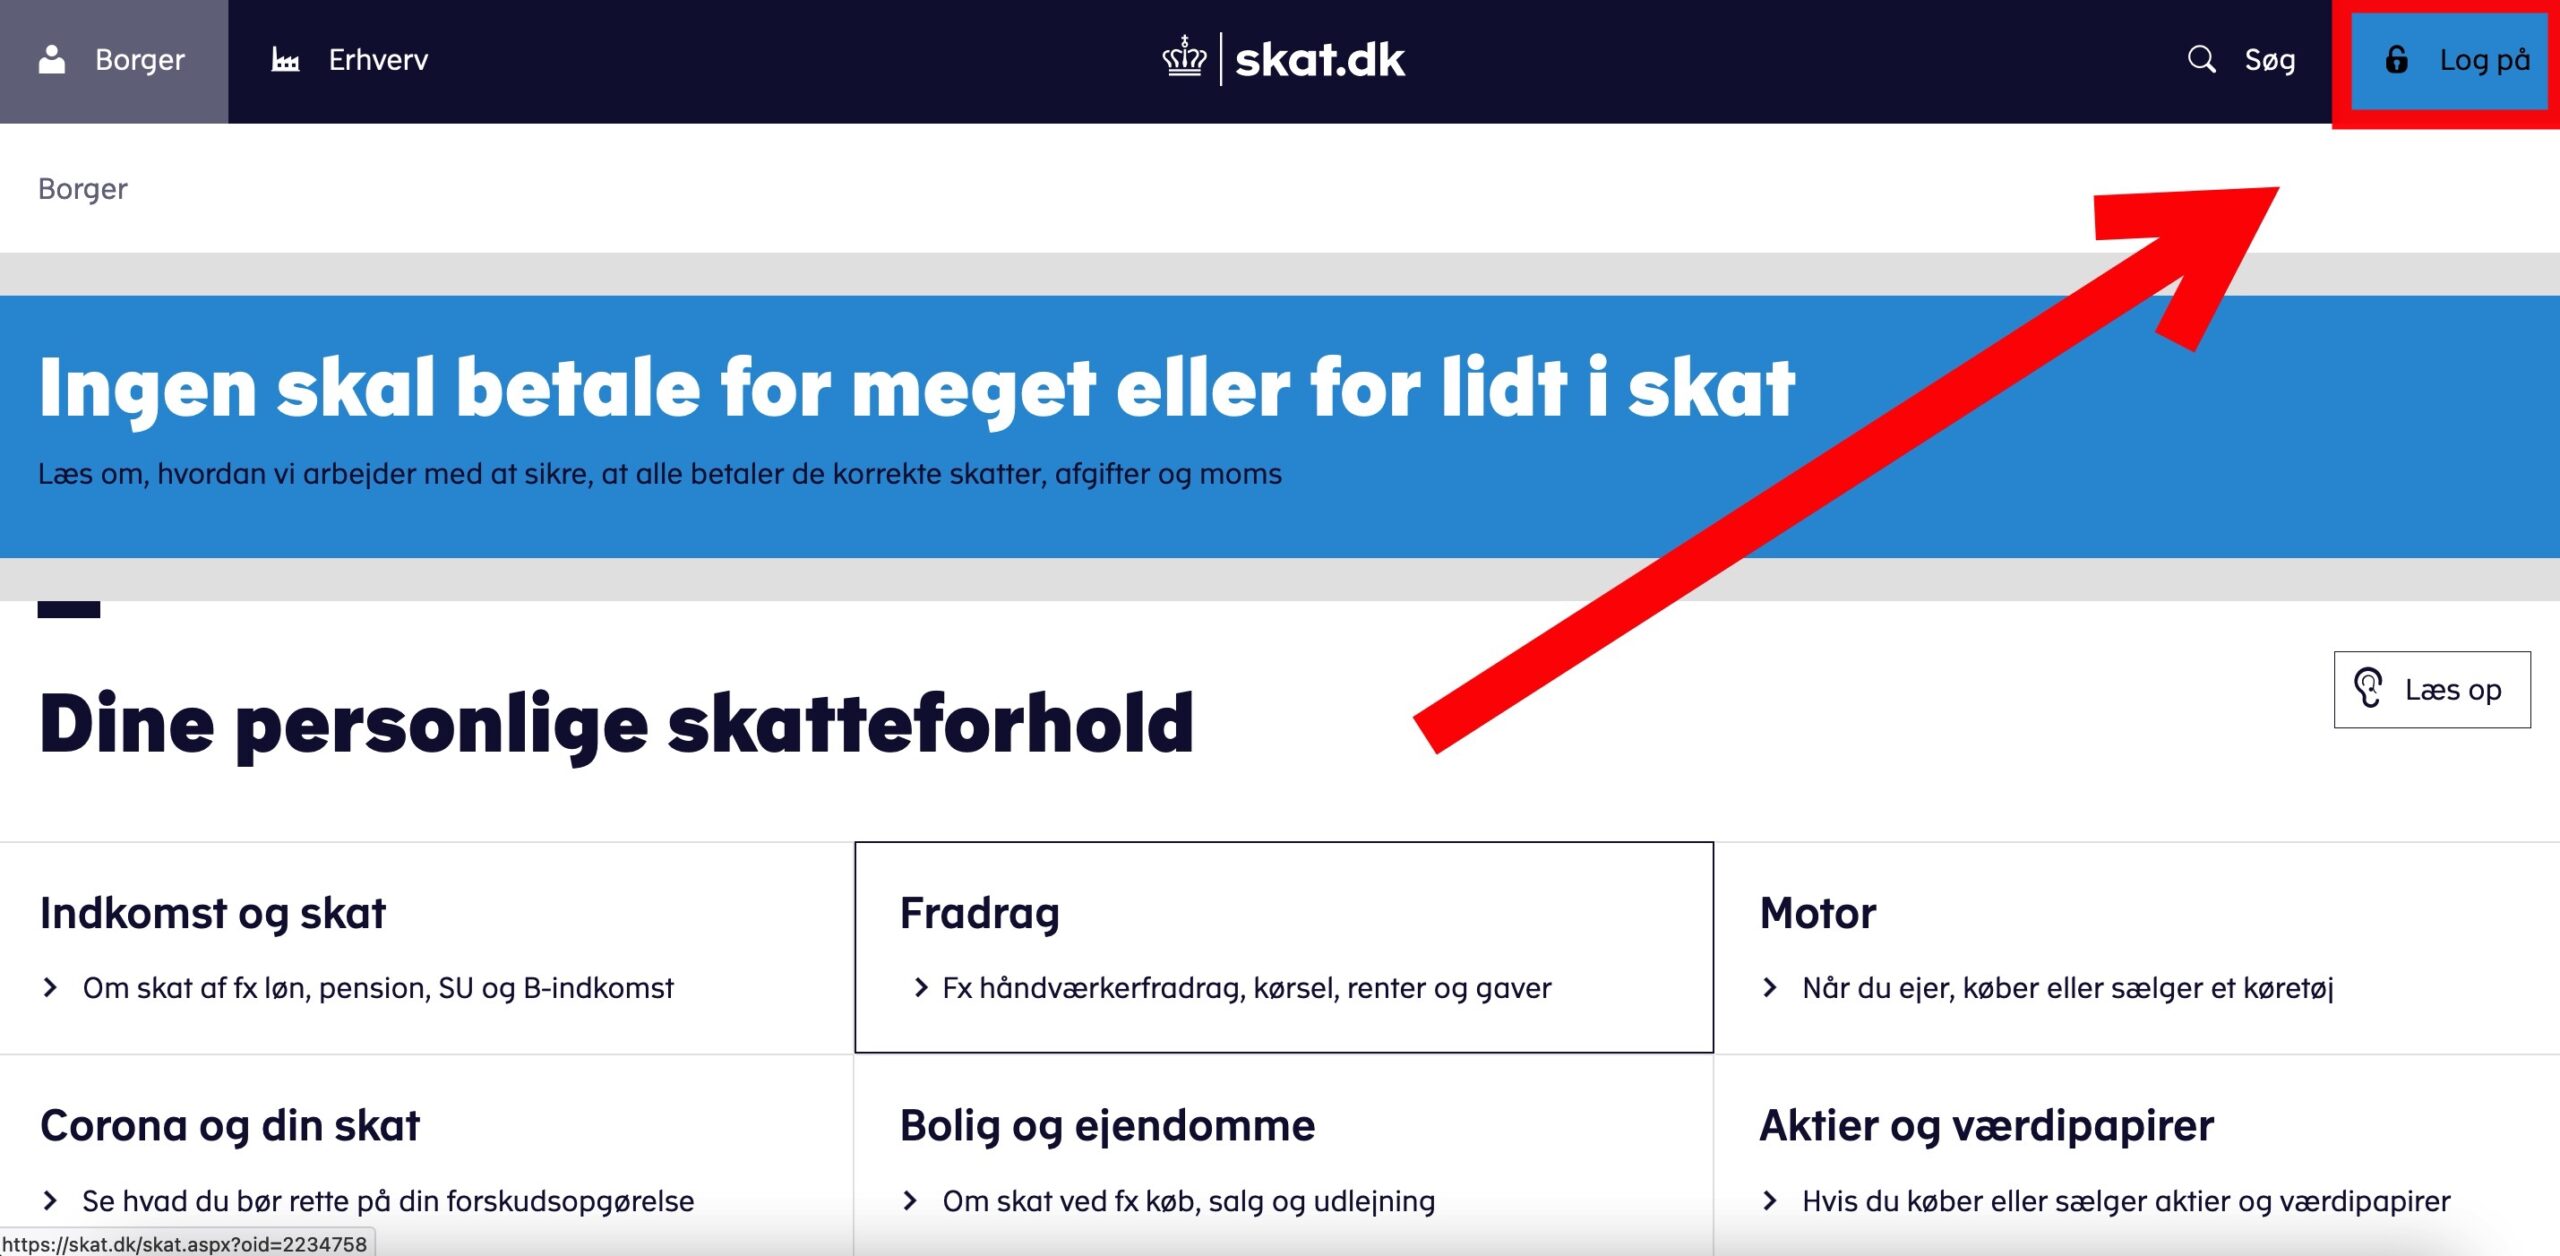 Step 1 of making a repayment plan for VAT loan: Click “Log på” in the upper right corner of skat.dk